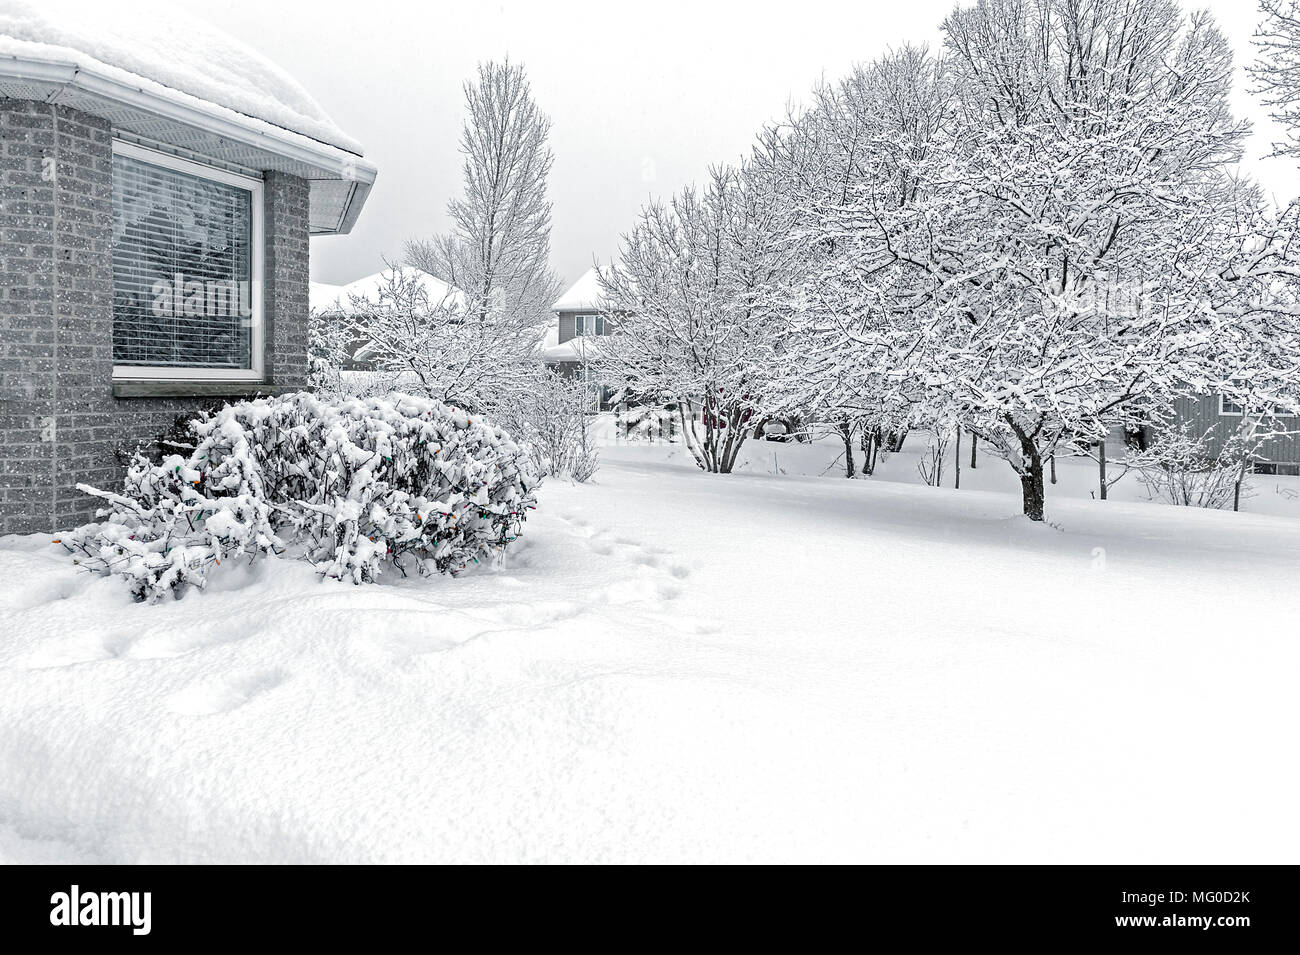 La neige a couvert de buissons et d'arbres sur la neige couverts pelouse par maison de brique gris Banque D'Images